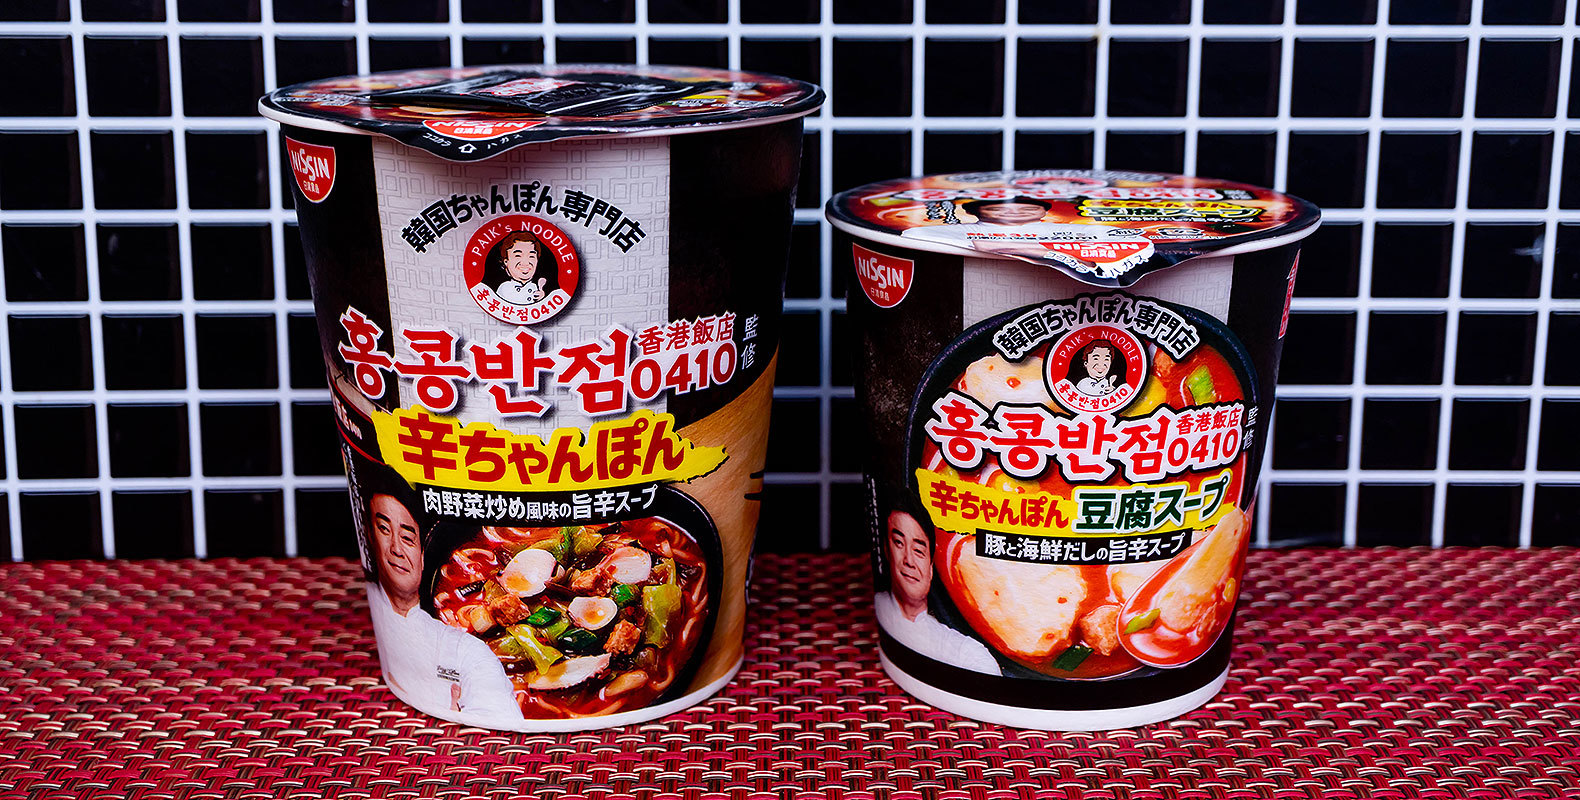 【ローソン】韓国超有名料理人の店「香港飯店0410」監修のカップ麺「辛ちゃんぽん」とスープ「辛ちゃんぽん豆腐スープ」を食べてみた